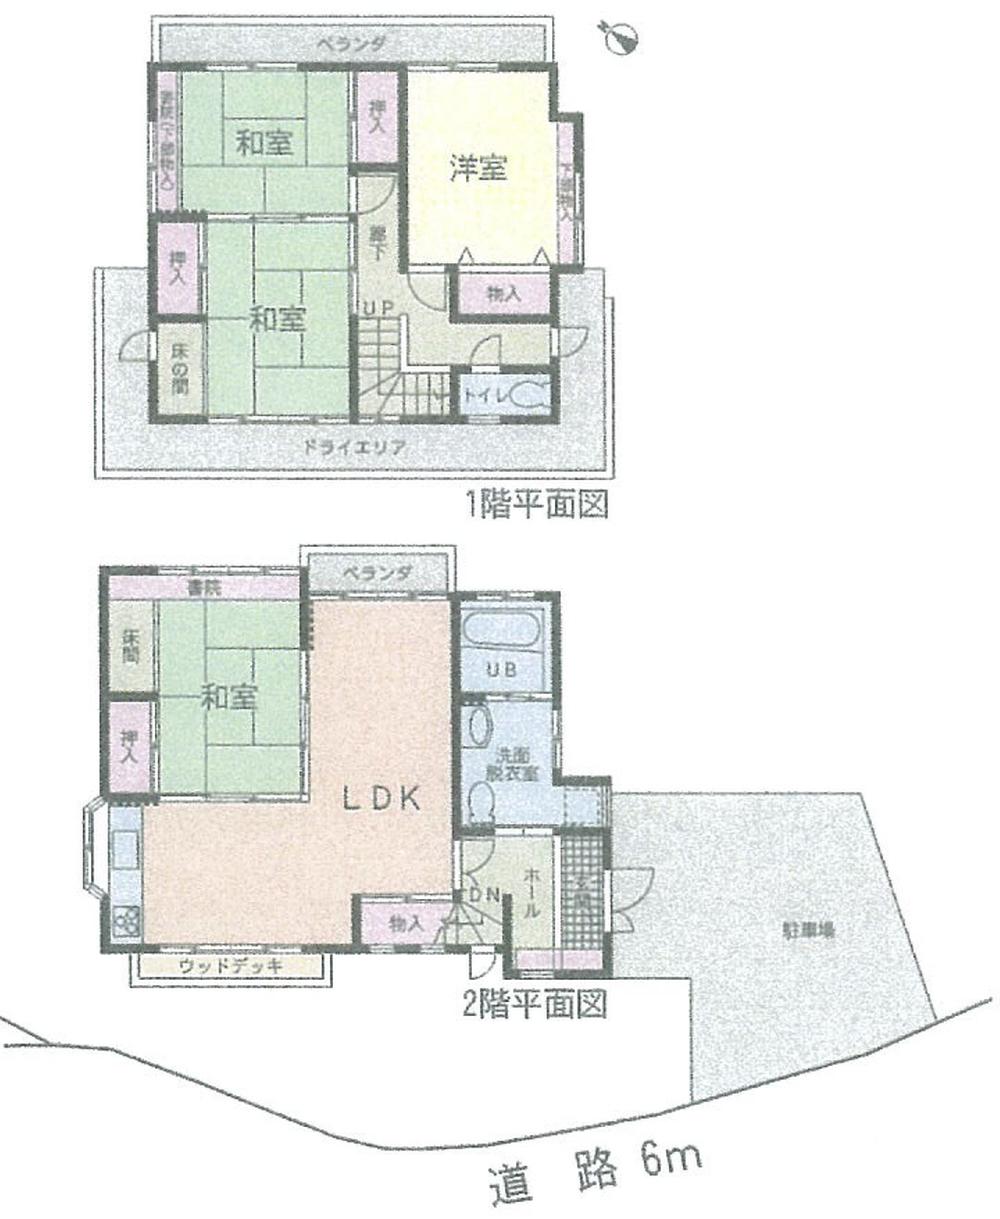 Floor plan. 29,800,000 yen, 4LDK, Land area 344.27 sq m , Building area 104.74 sq m floor plan